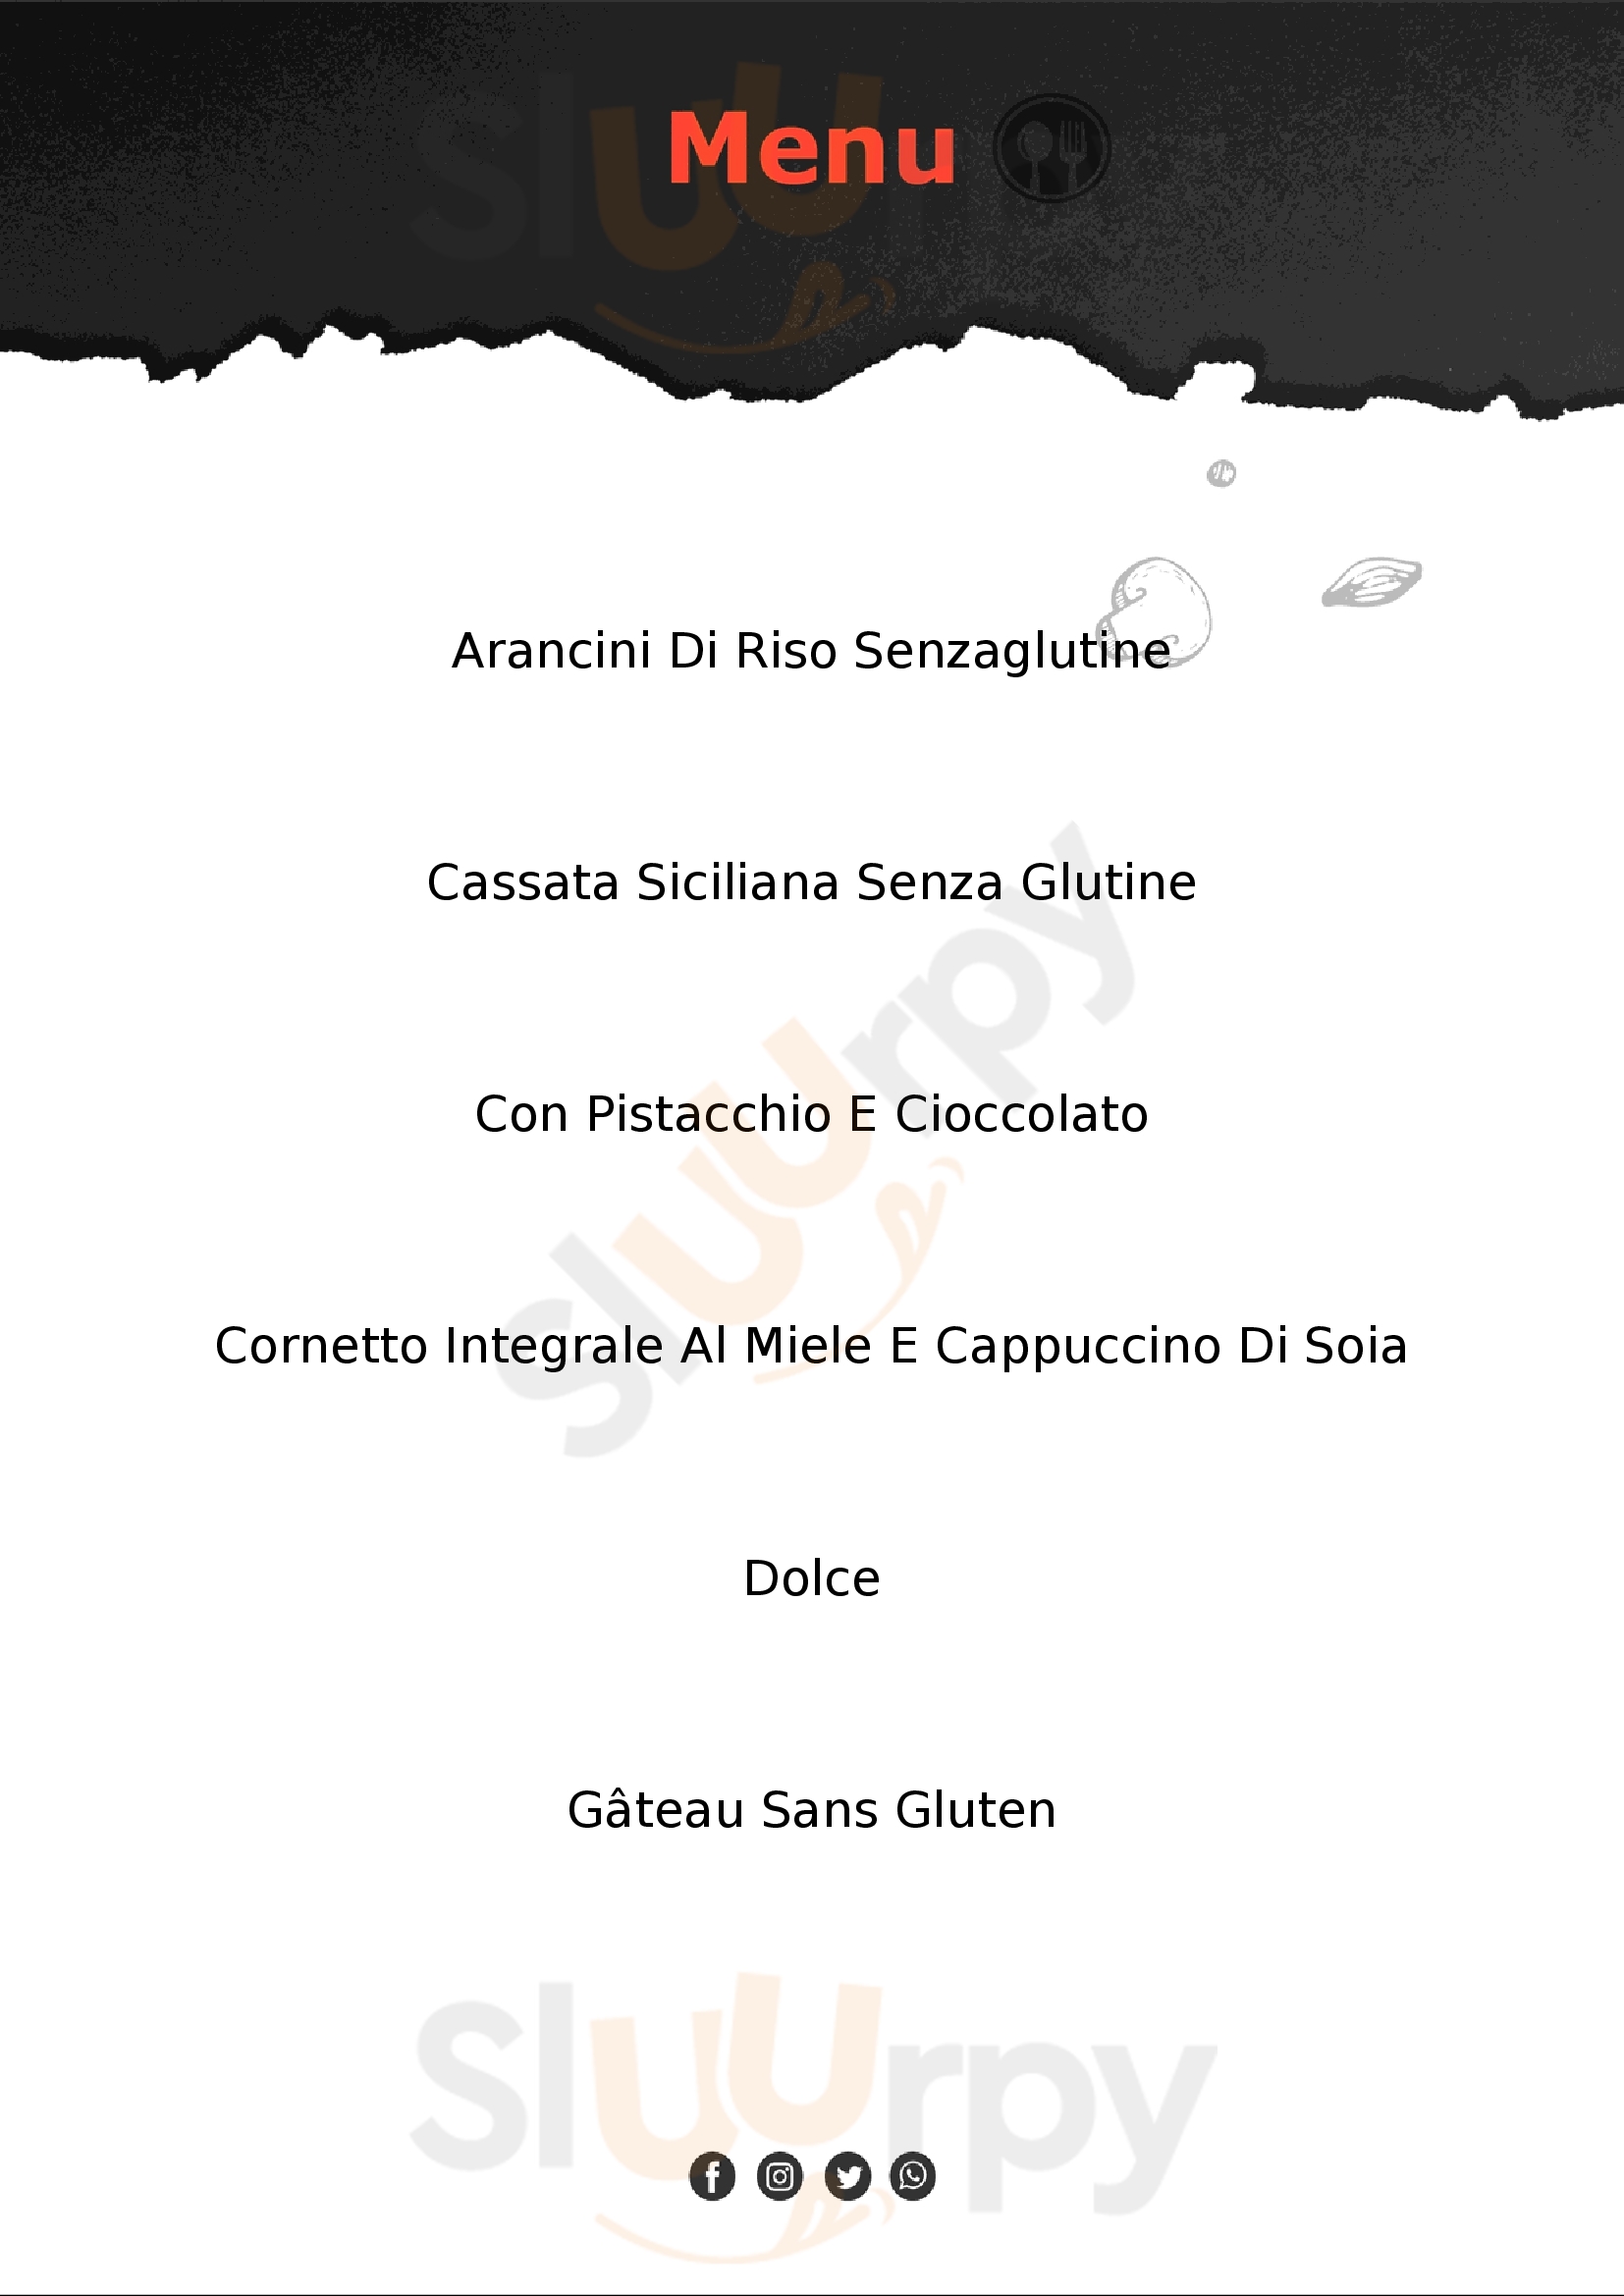 Les Caprices baker di salvo albicocco Palermo menù 1 pagina